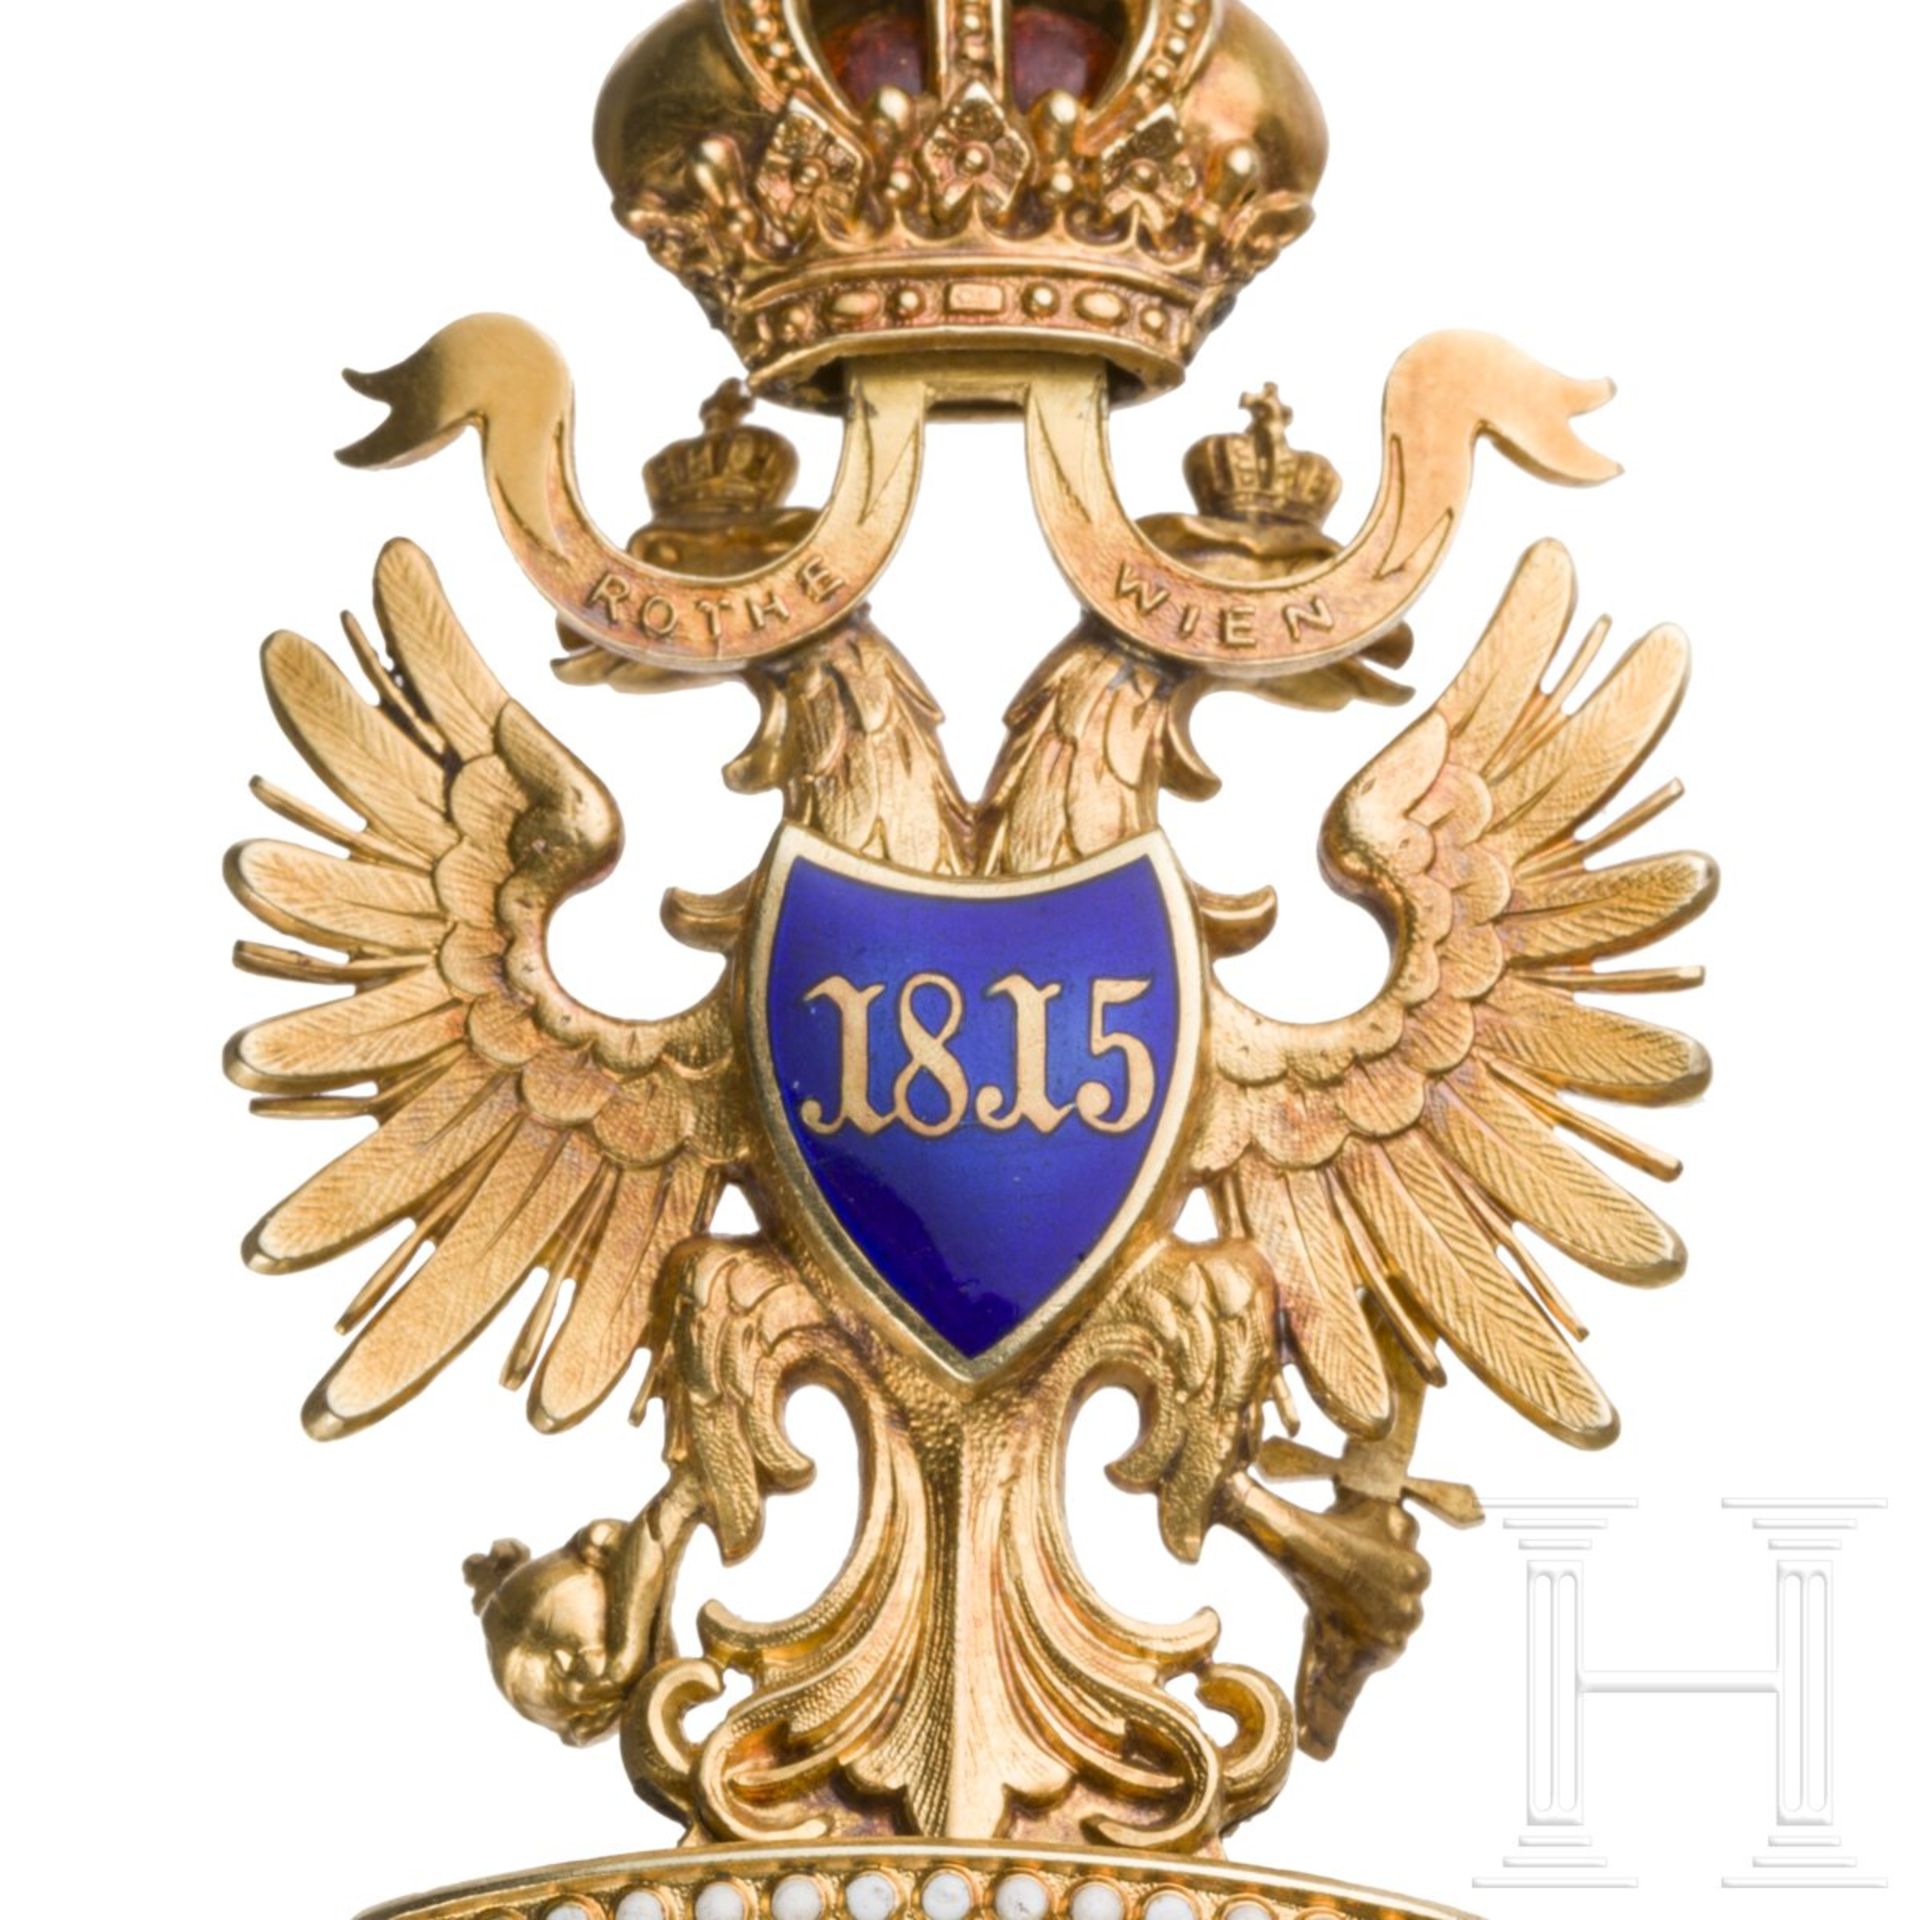 Orden der Eisernen Krone 2. Klasse von Rothe in Wien - Image 7 of 7